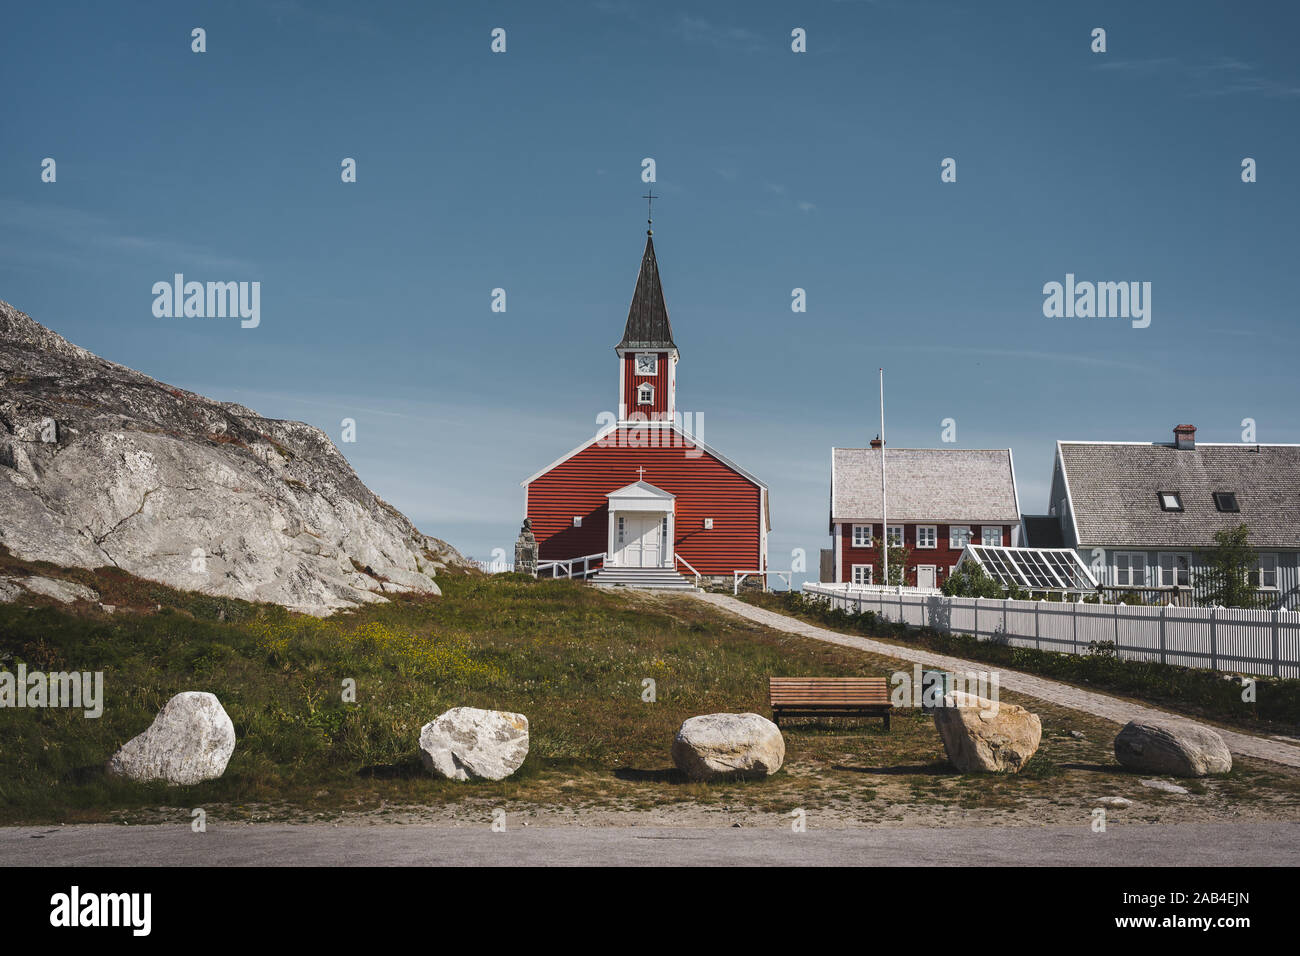 Annaassisitta Oqaluffia Nuuk église cathédrale, l'église de Notre Sauveur dans centre historique de Nuuk. Capitale du Groenland. Journée ensoleillée avec ciel bleu Banque D'Images